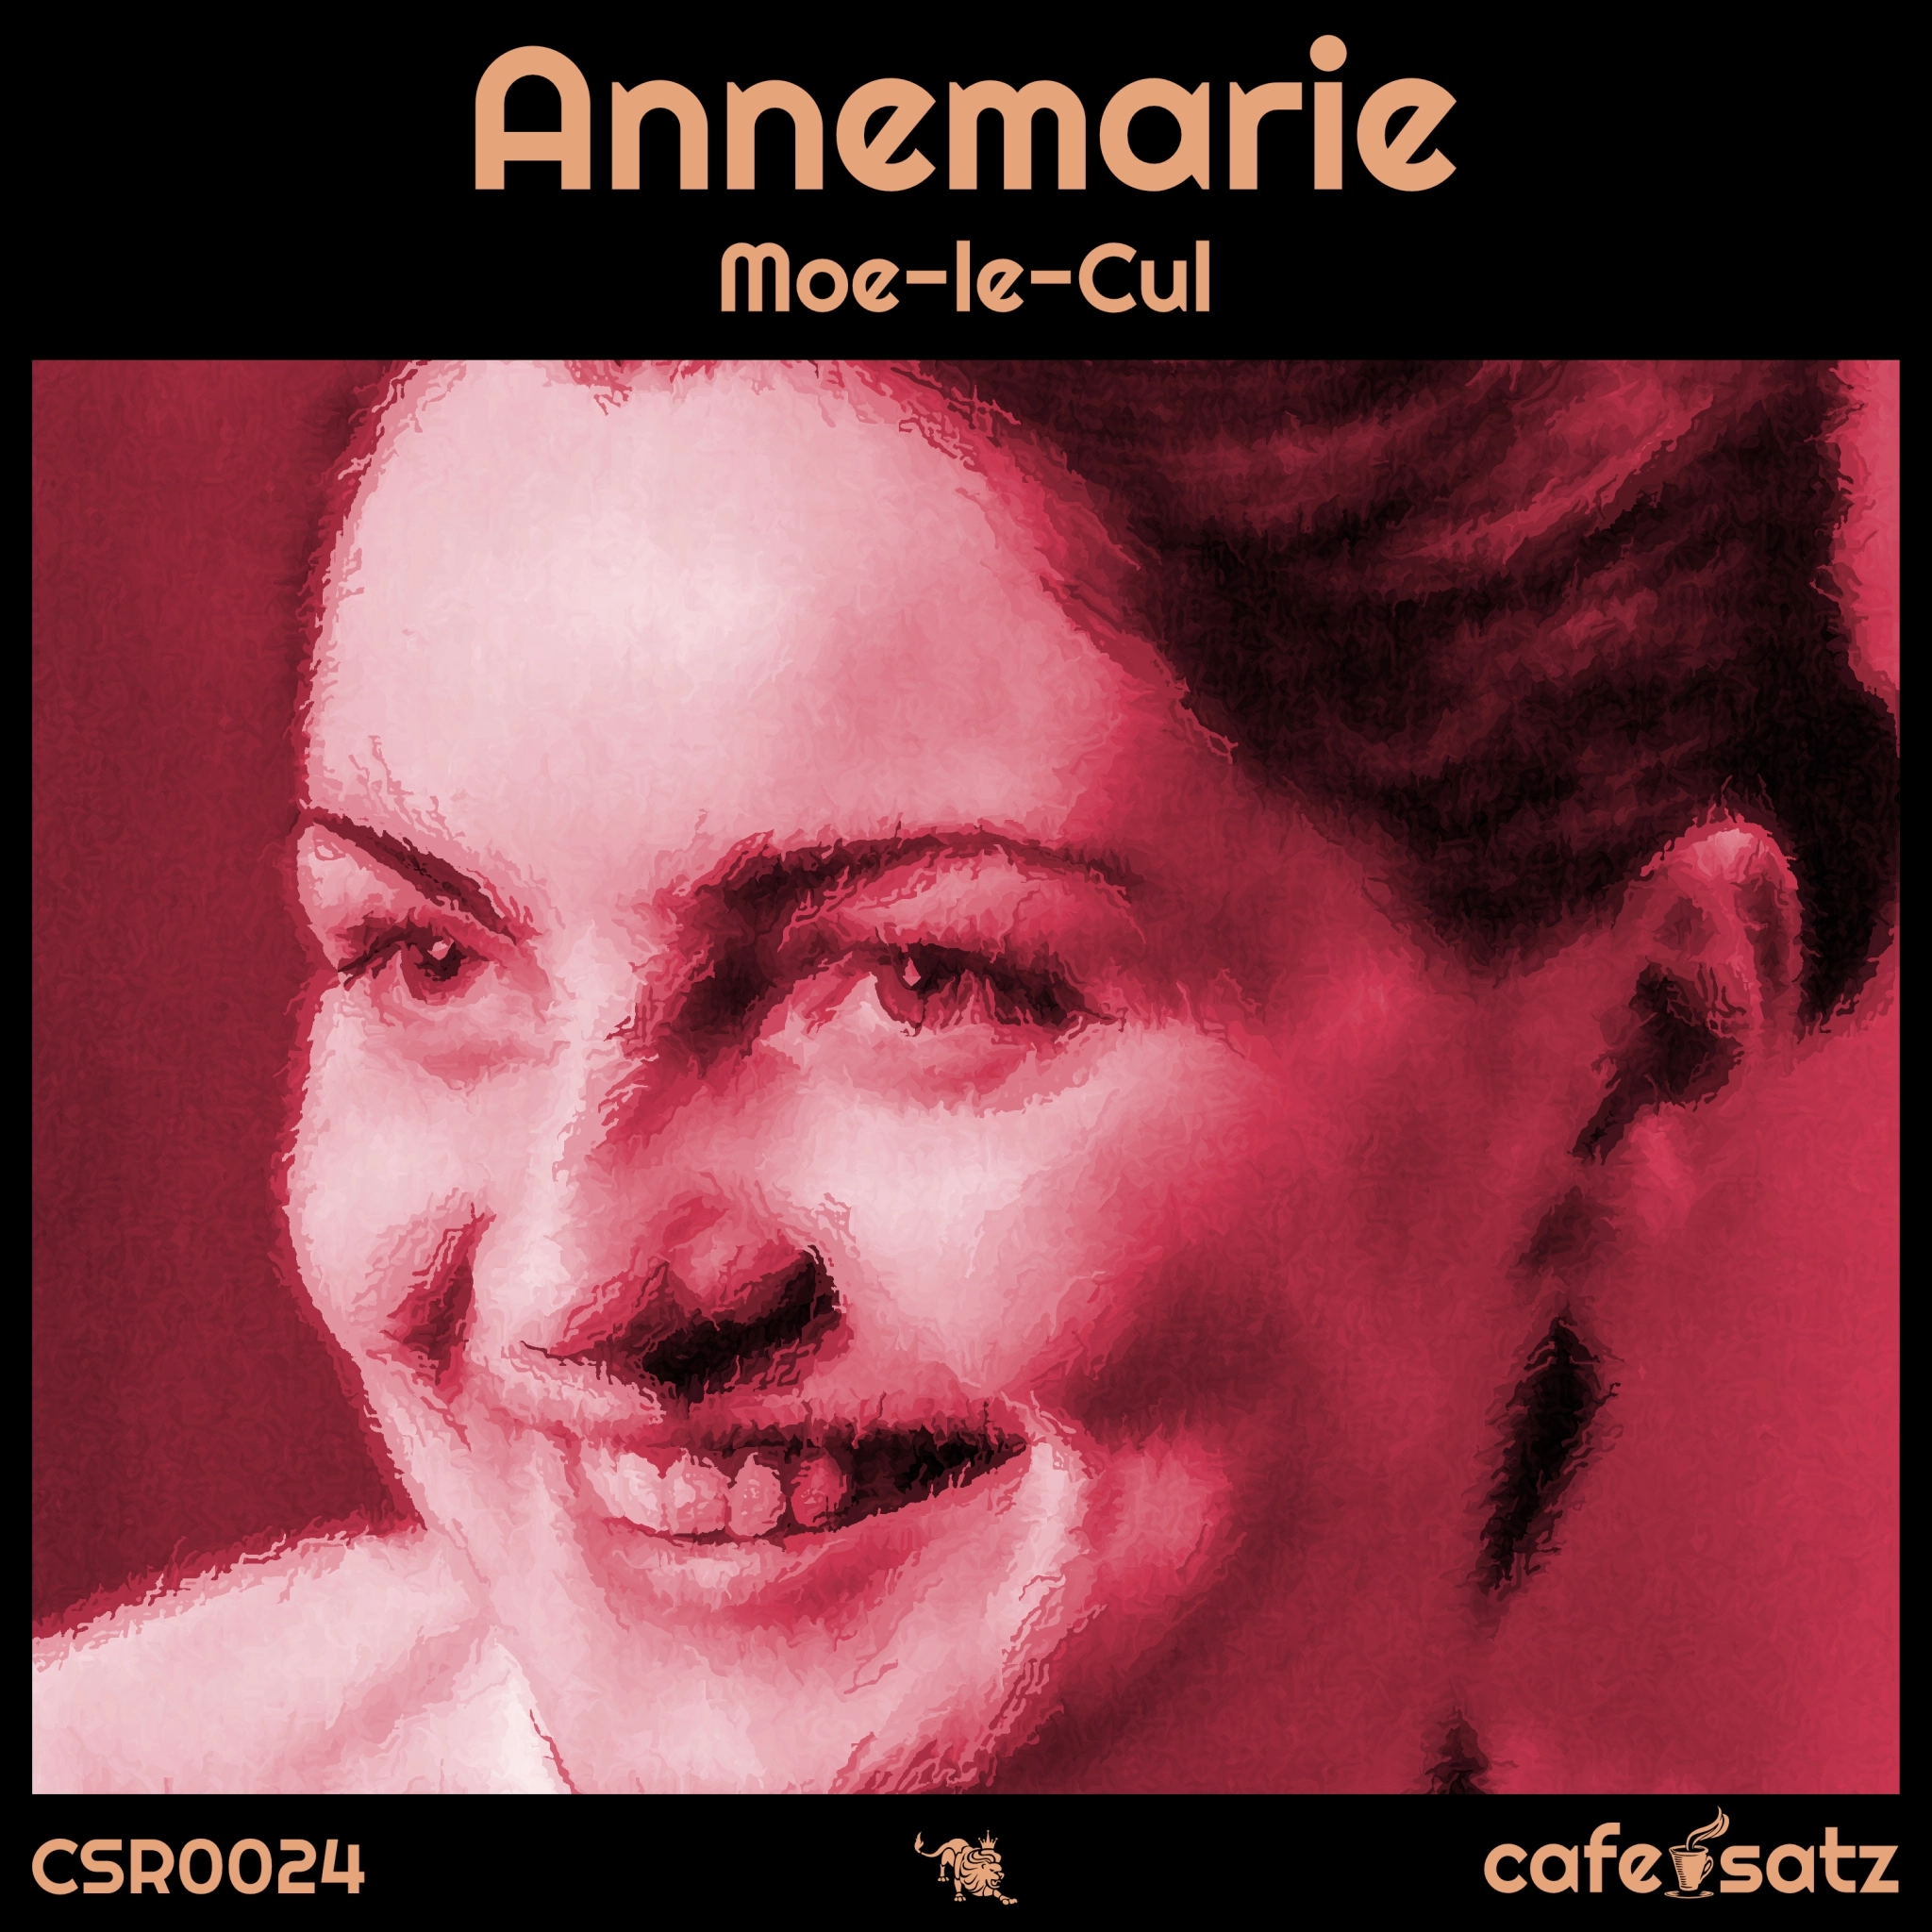 COMING SOON: Annemarie